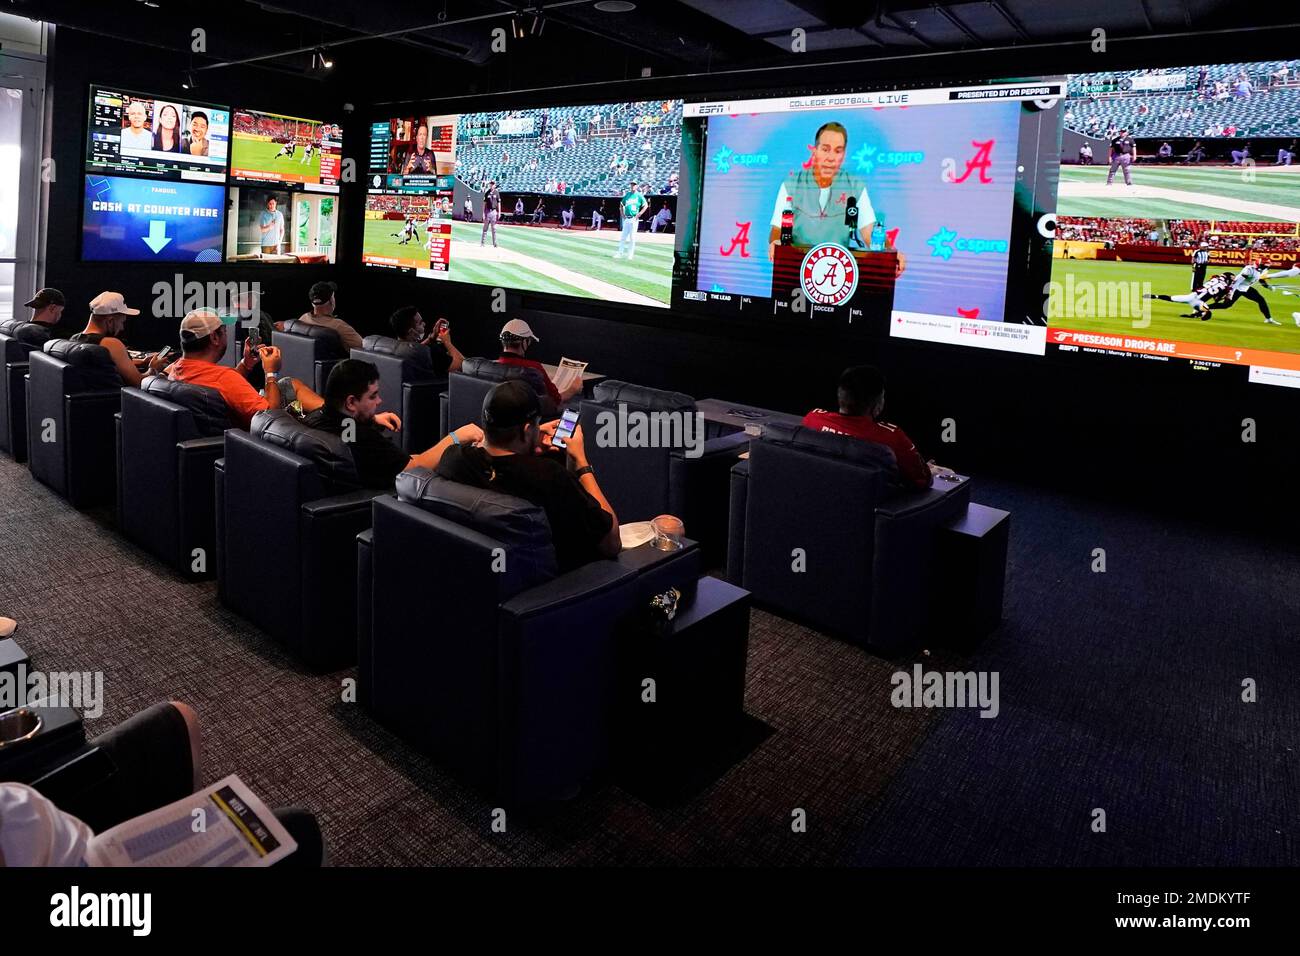 Customers watch sporting events inside FanDuel Sportsbook inside Footprint Center, Thursday, Sept